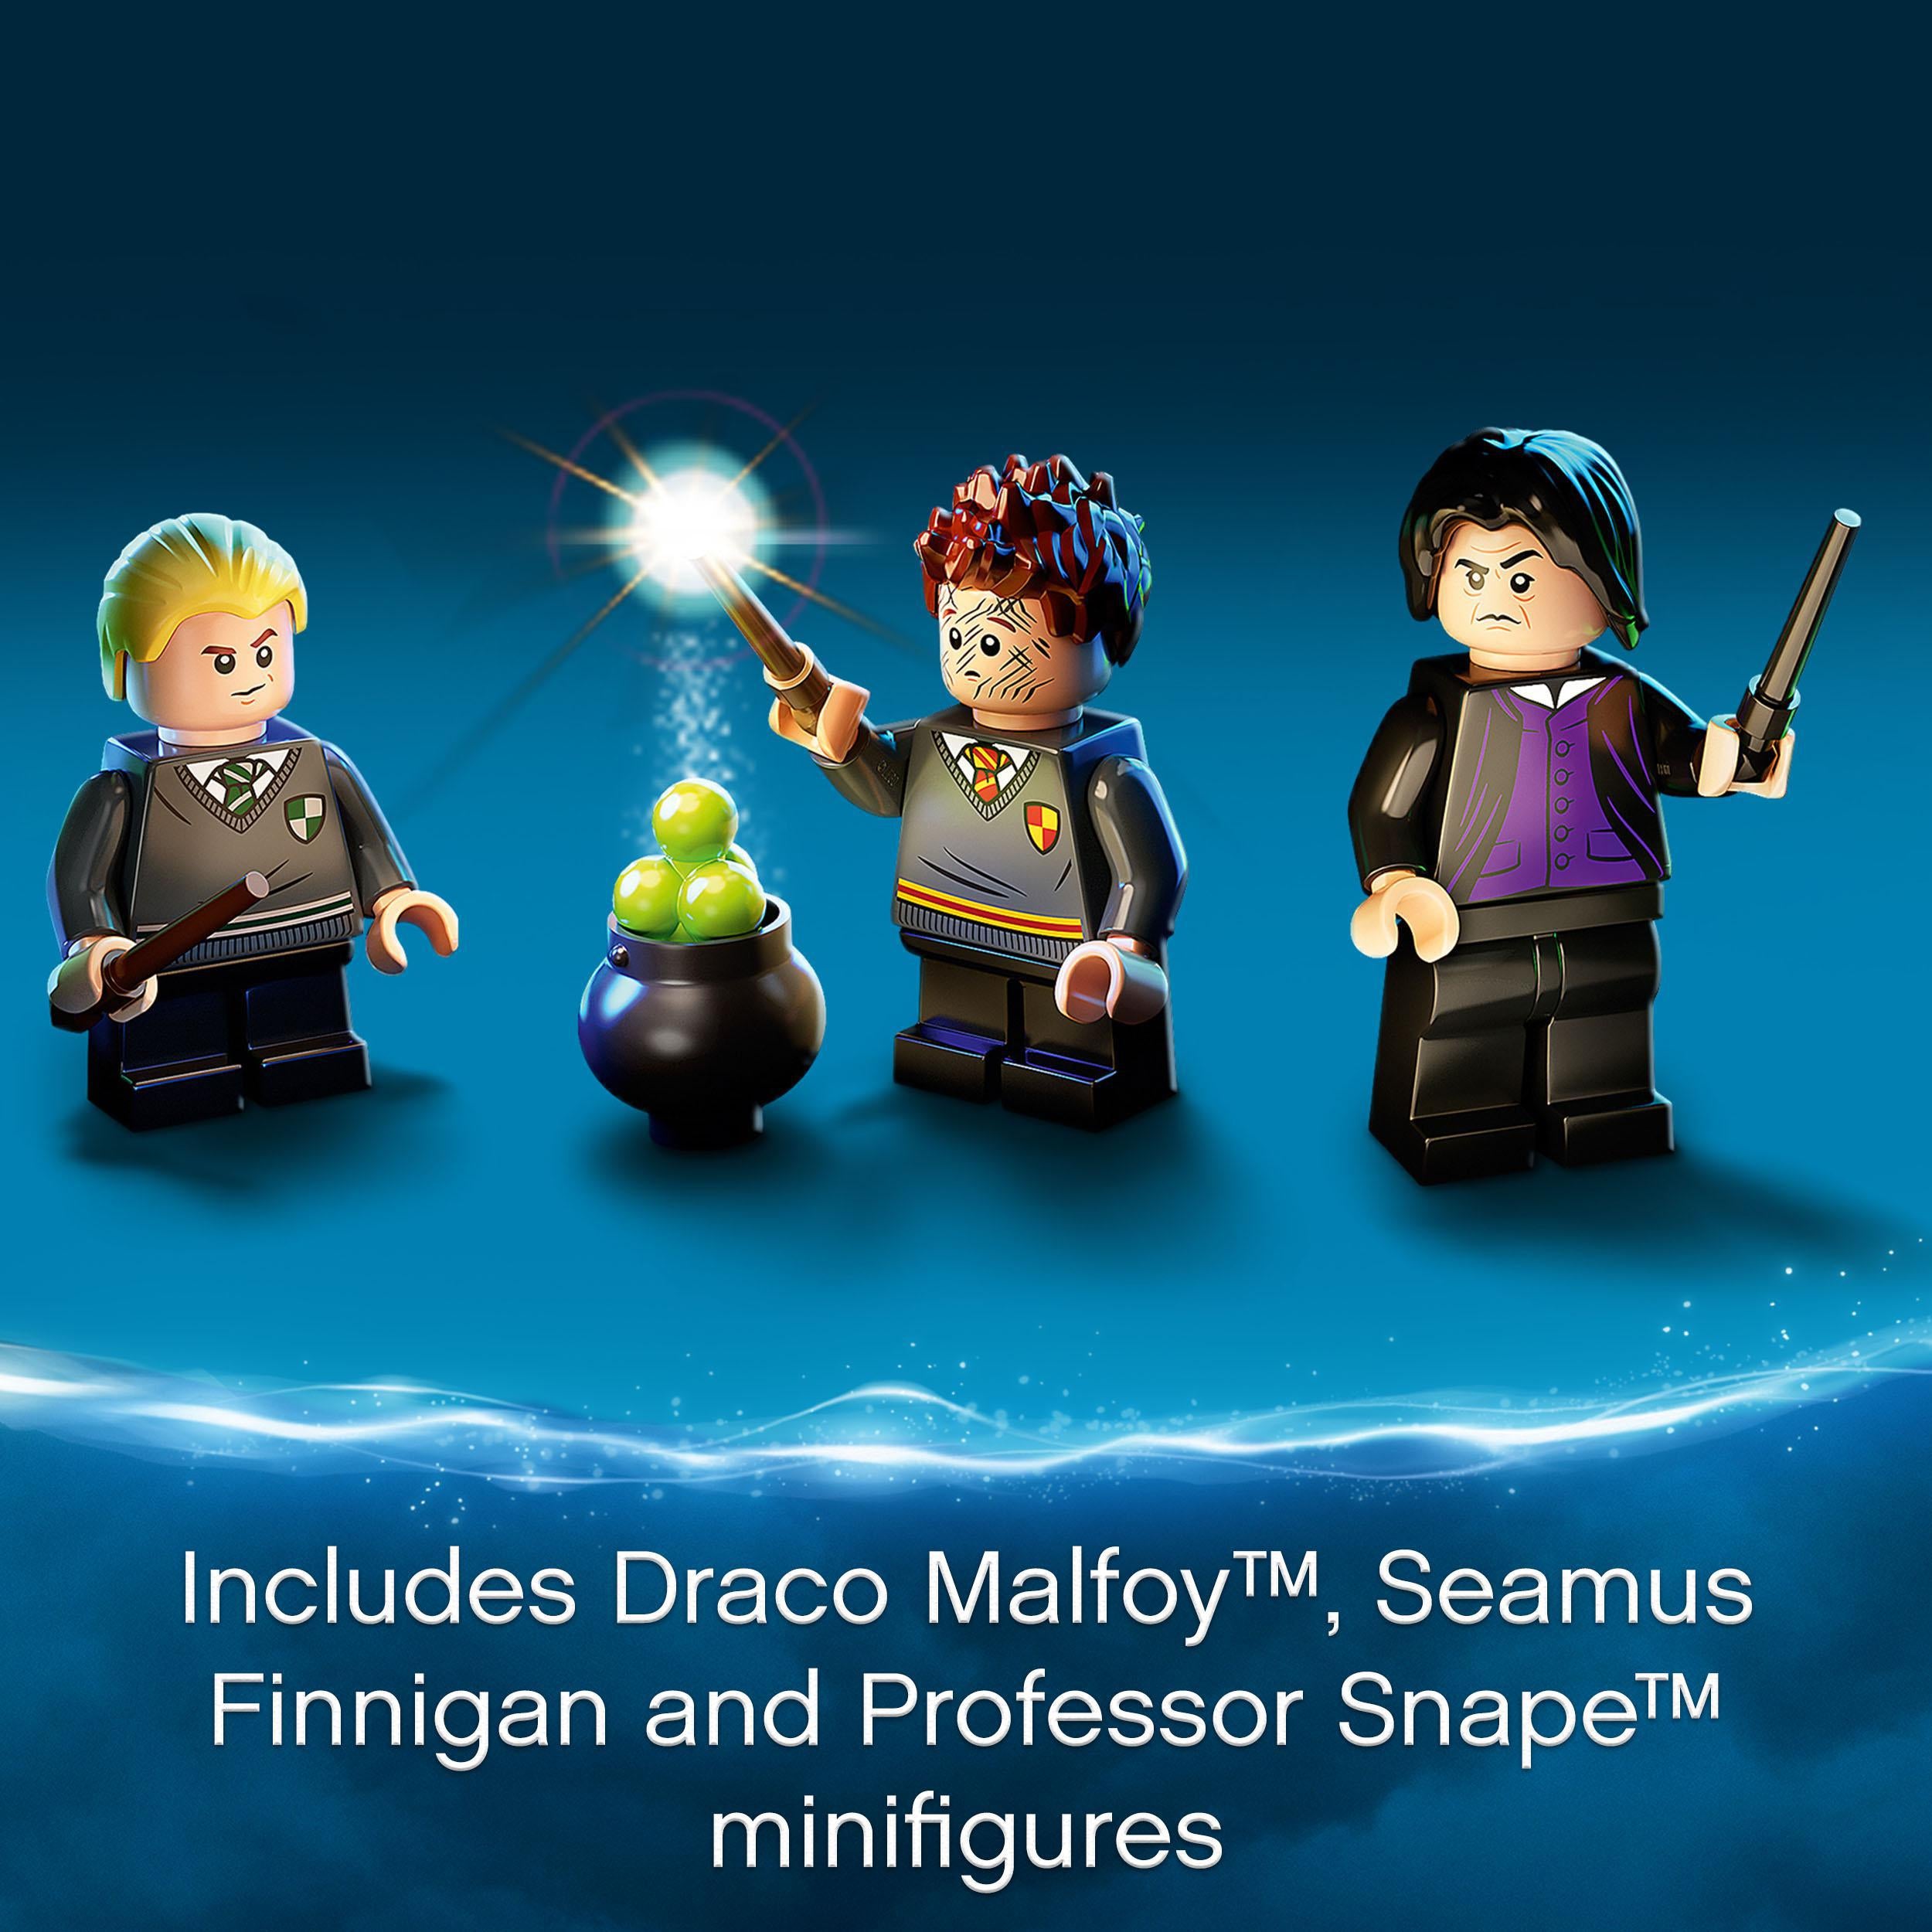 LEGO® Harry Potter Hogwarts Potions Class Set 76383 Default Title